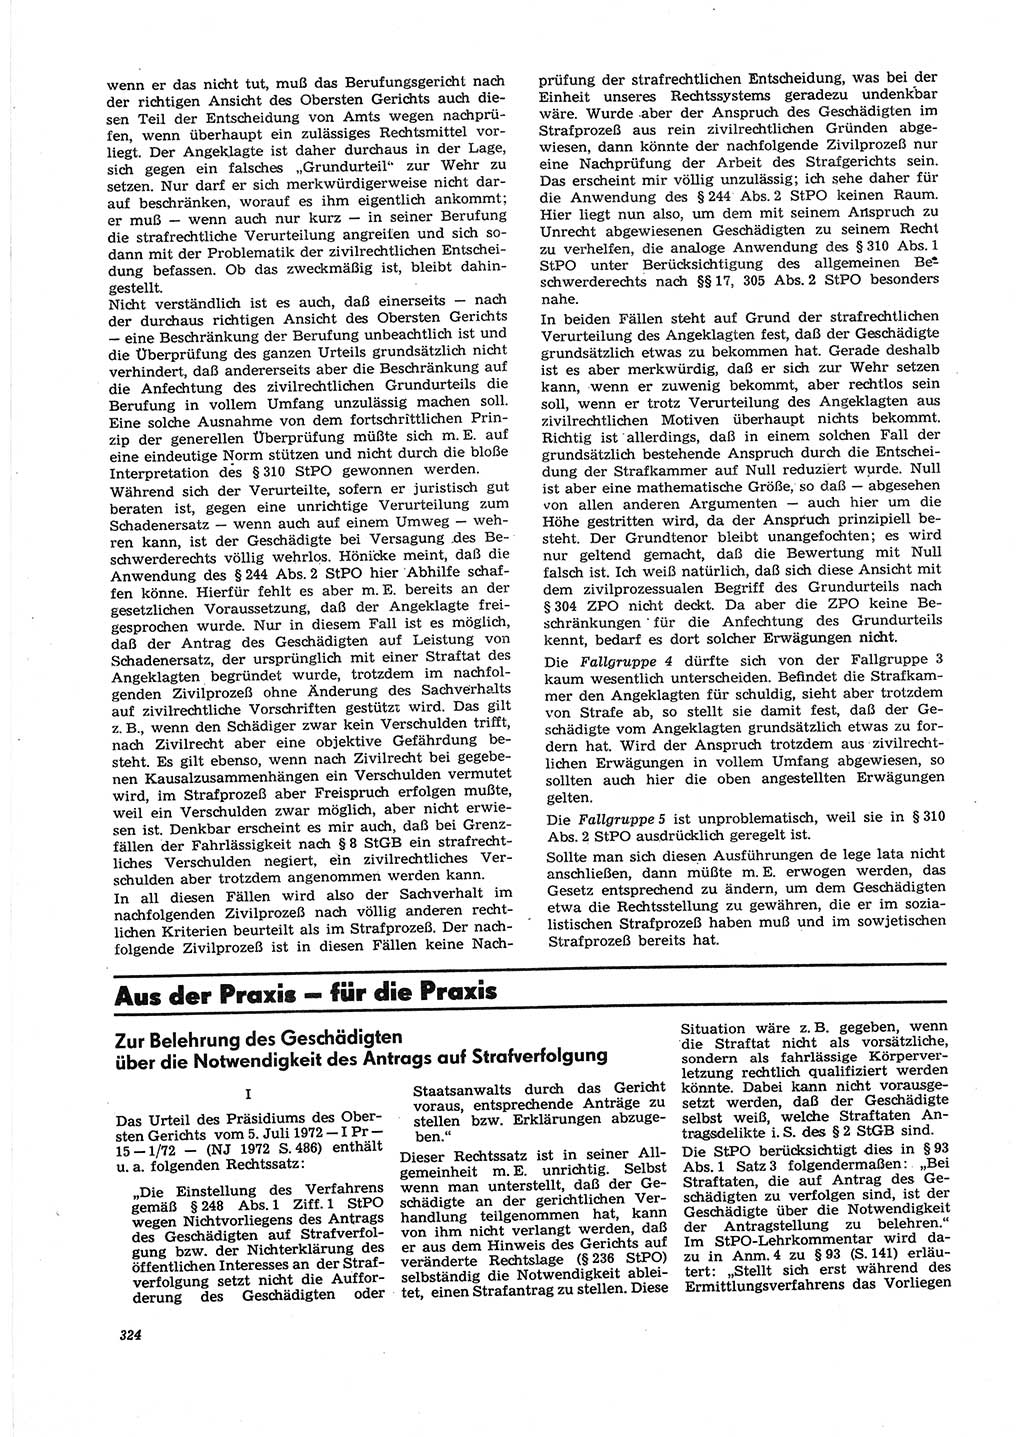 Neue Justiz (NJ), Zeitschrift für Recht und Rechtswissenschaft [Deutsche Demokratische Republik (DDR)], 27. Jahrgang 1973, Seite 324 (NJ DDR 1973, S. 324)